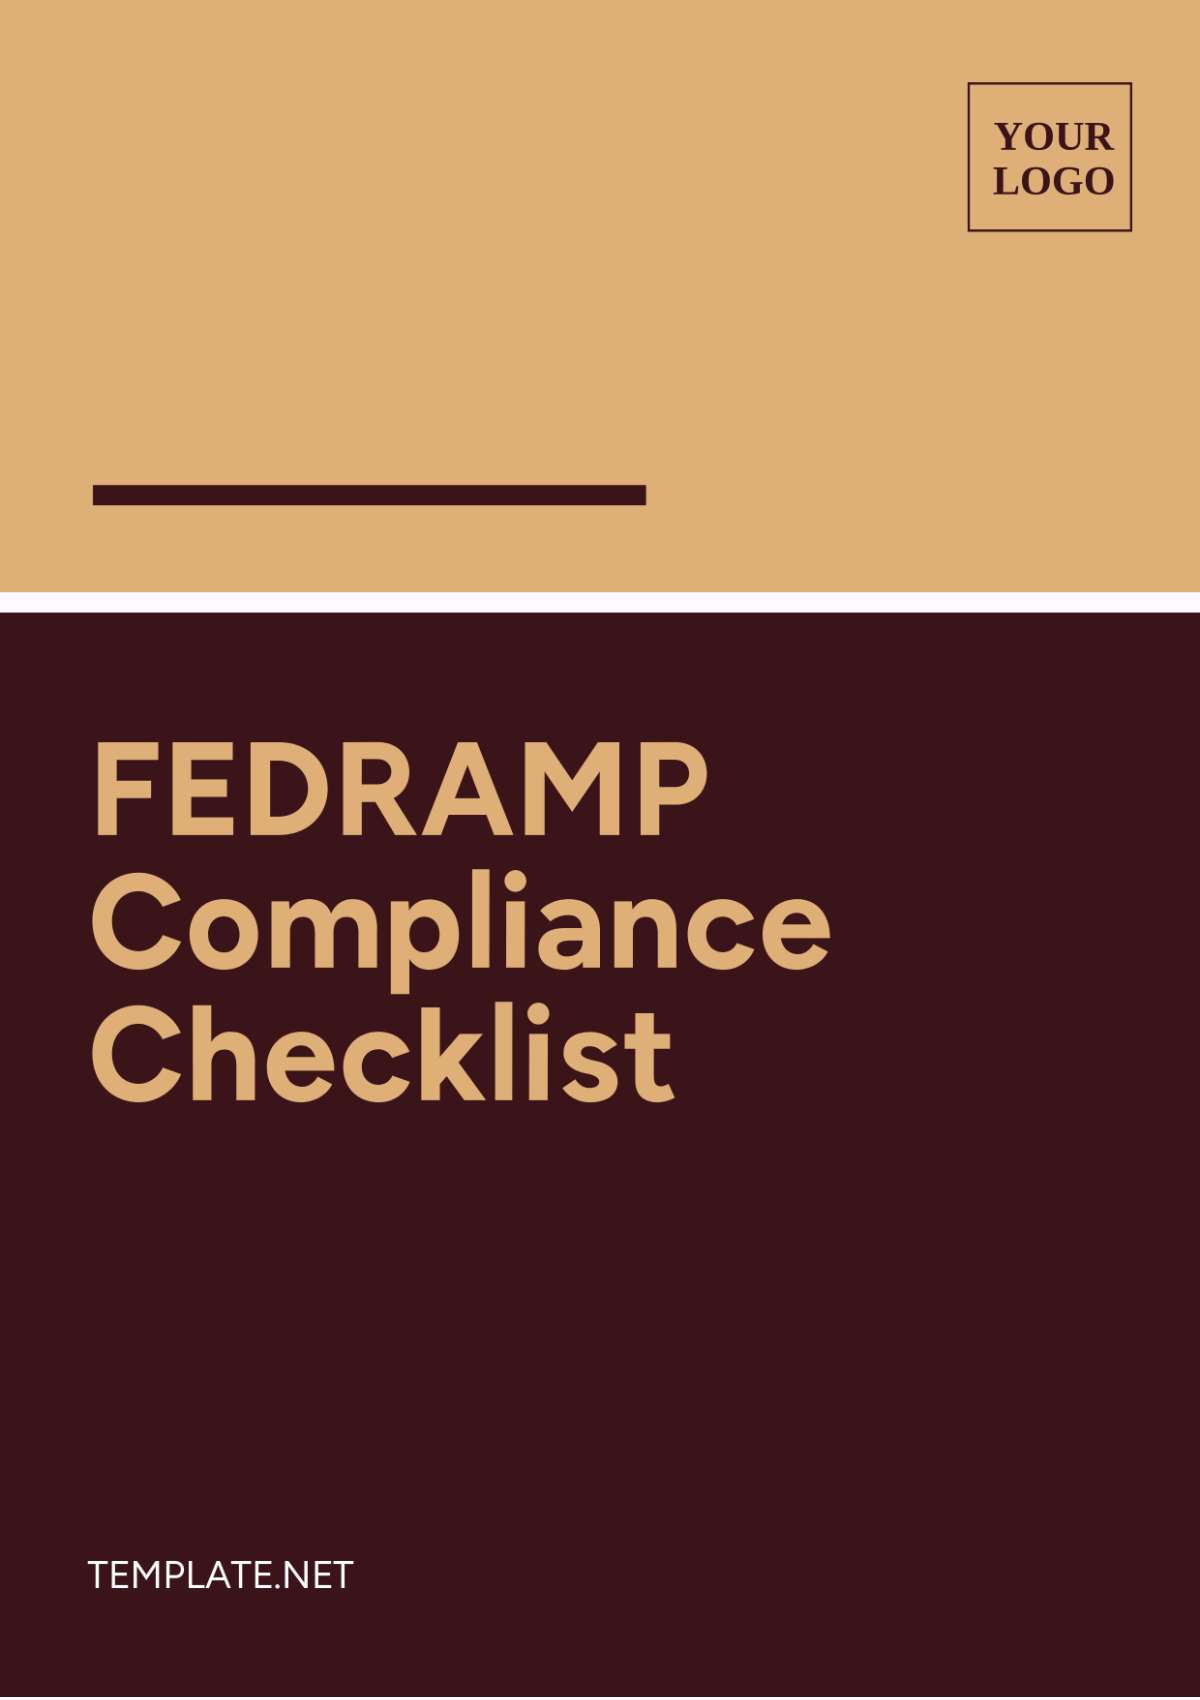 FEDRAMP Compliance Checklist Template